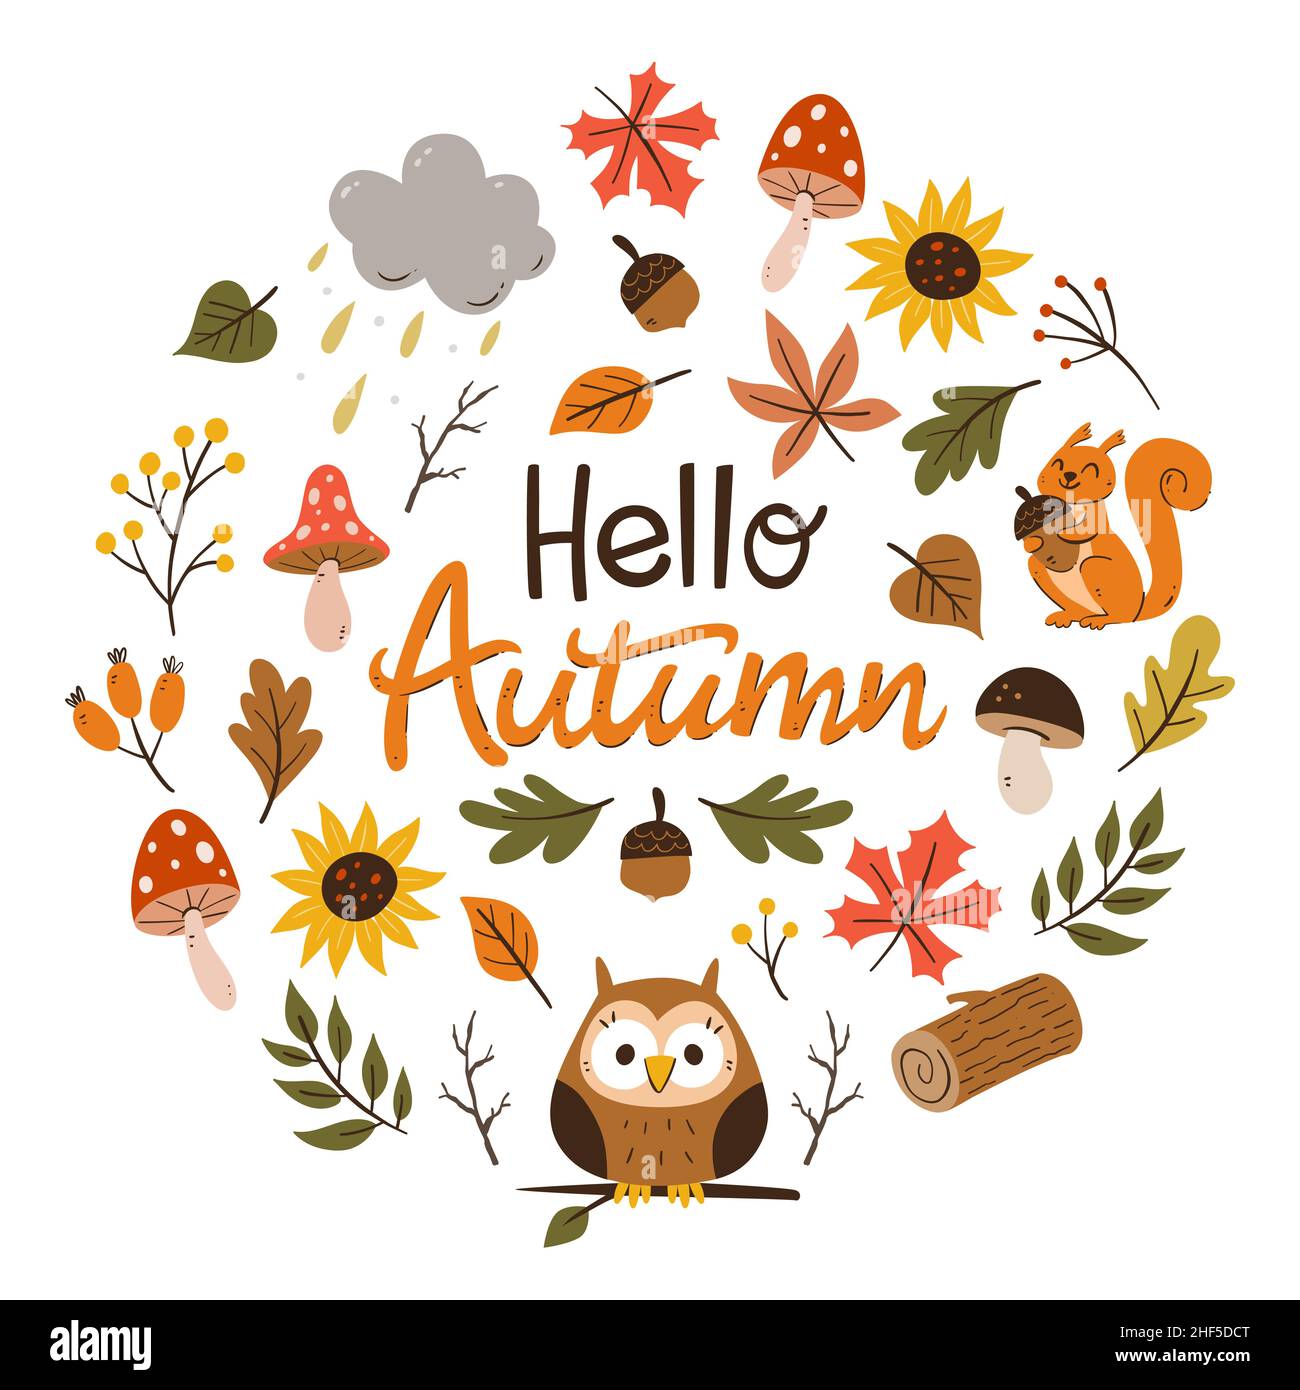 Tarjeta de otoño colorida con hojas de temporada, ramitas, champiñones y pequeños animales del bosque. Ilustración vectorial dibujada a mano con elementos aislados. Ilustración del Vector